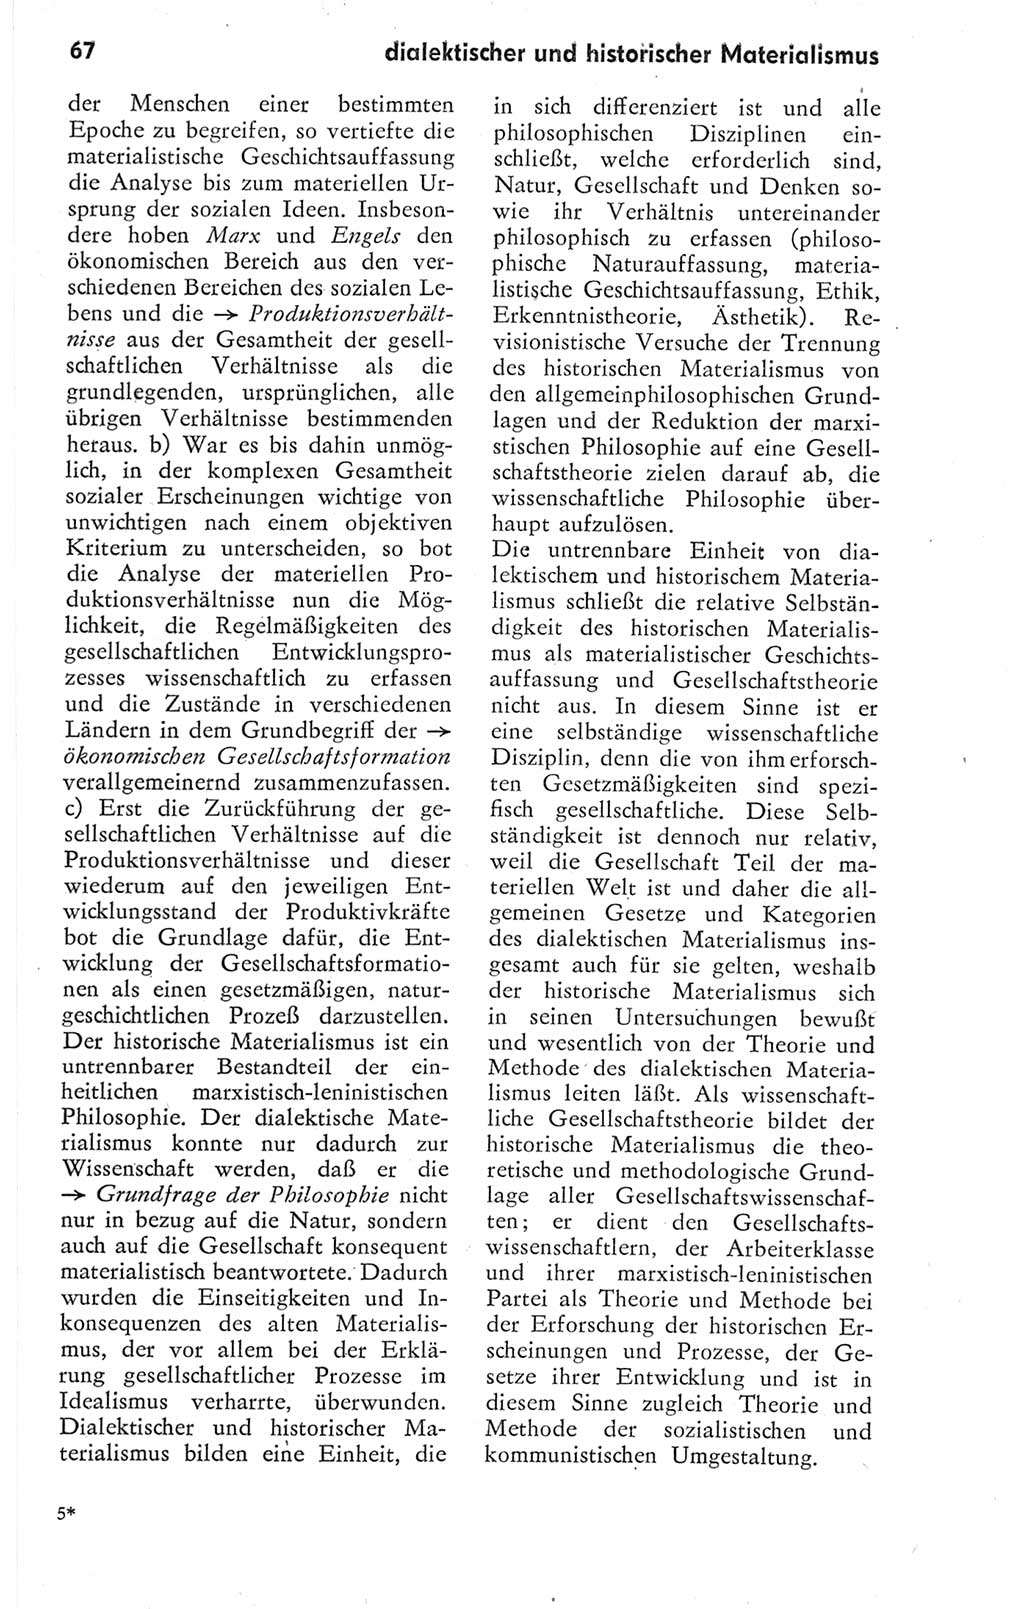 Kleines Wörterbuch der marxistisch-leninistischen Philosophie [Deutsche Demokratische Republik (DDR)] 1974, Seite 67 (Kl. Wb. ML Phil. DDR 1974, S. 67)